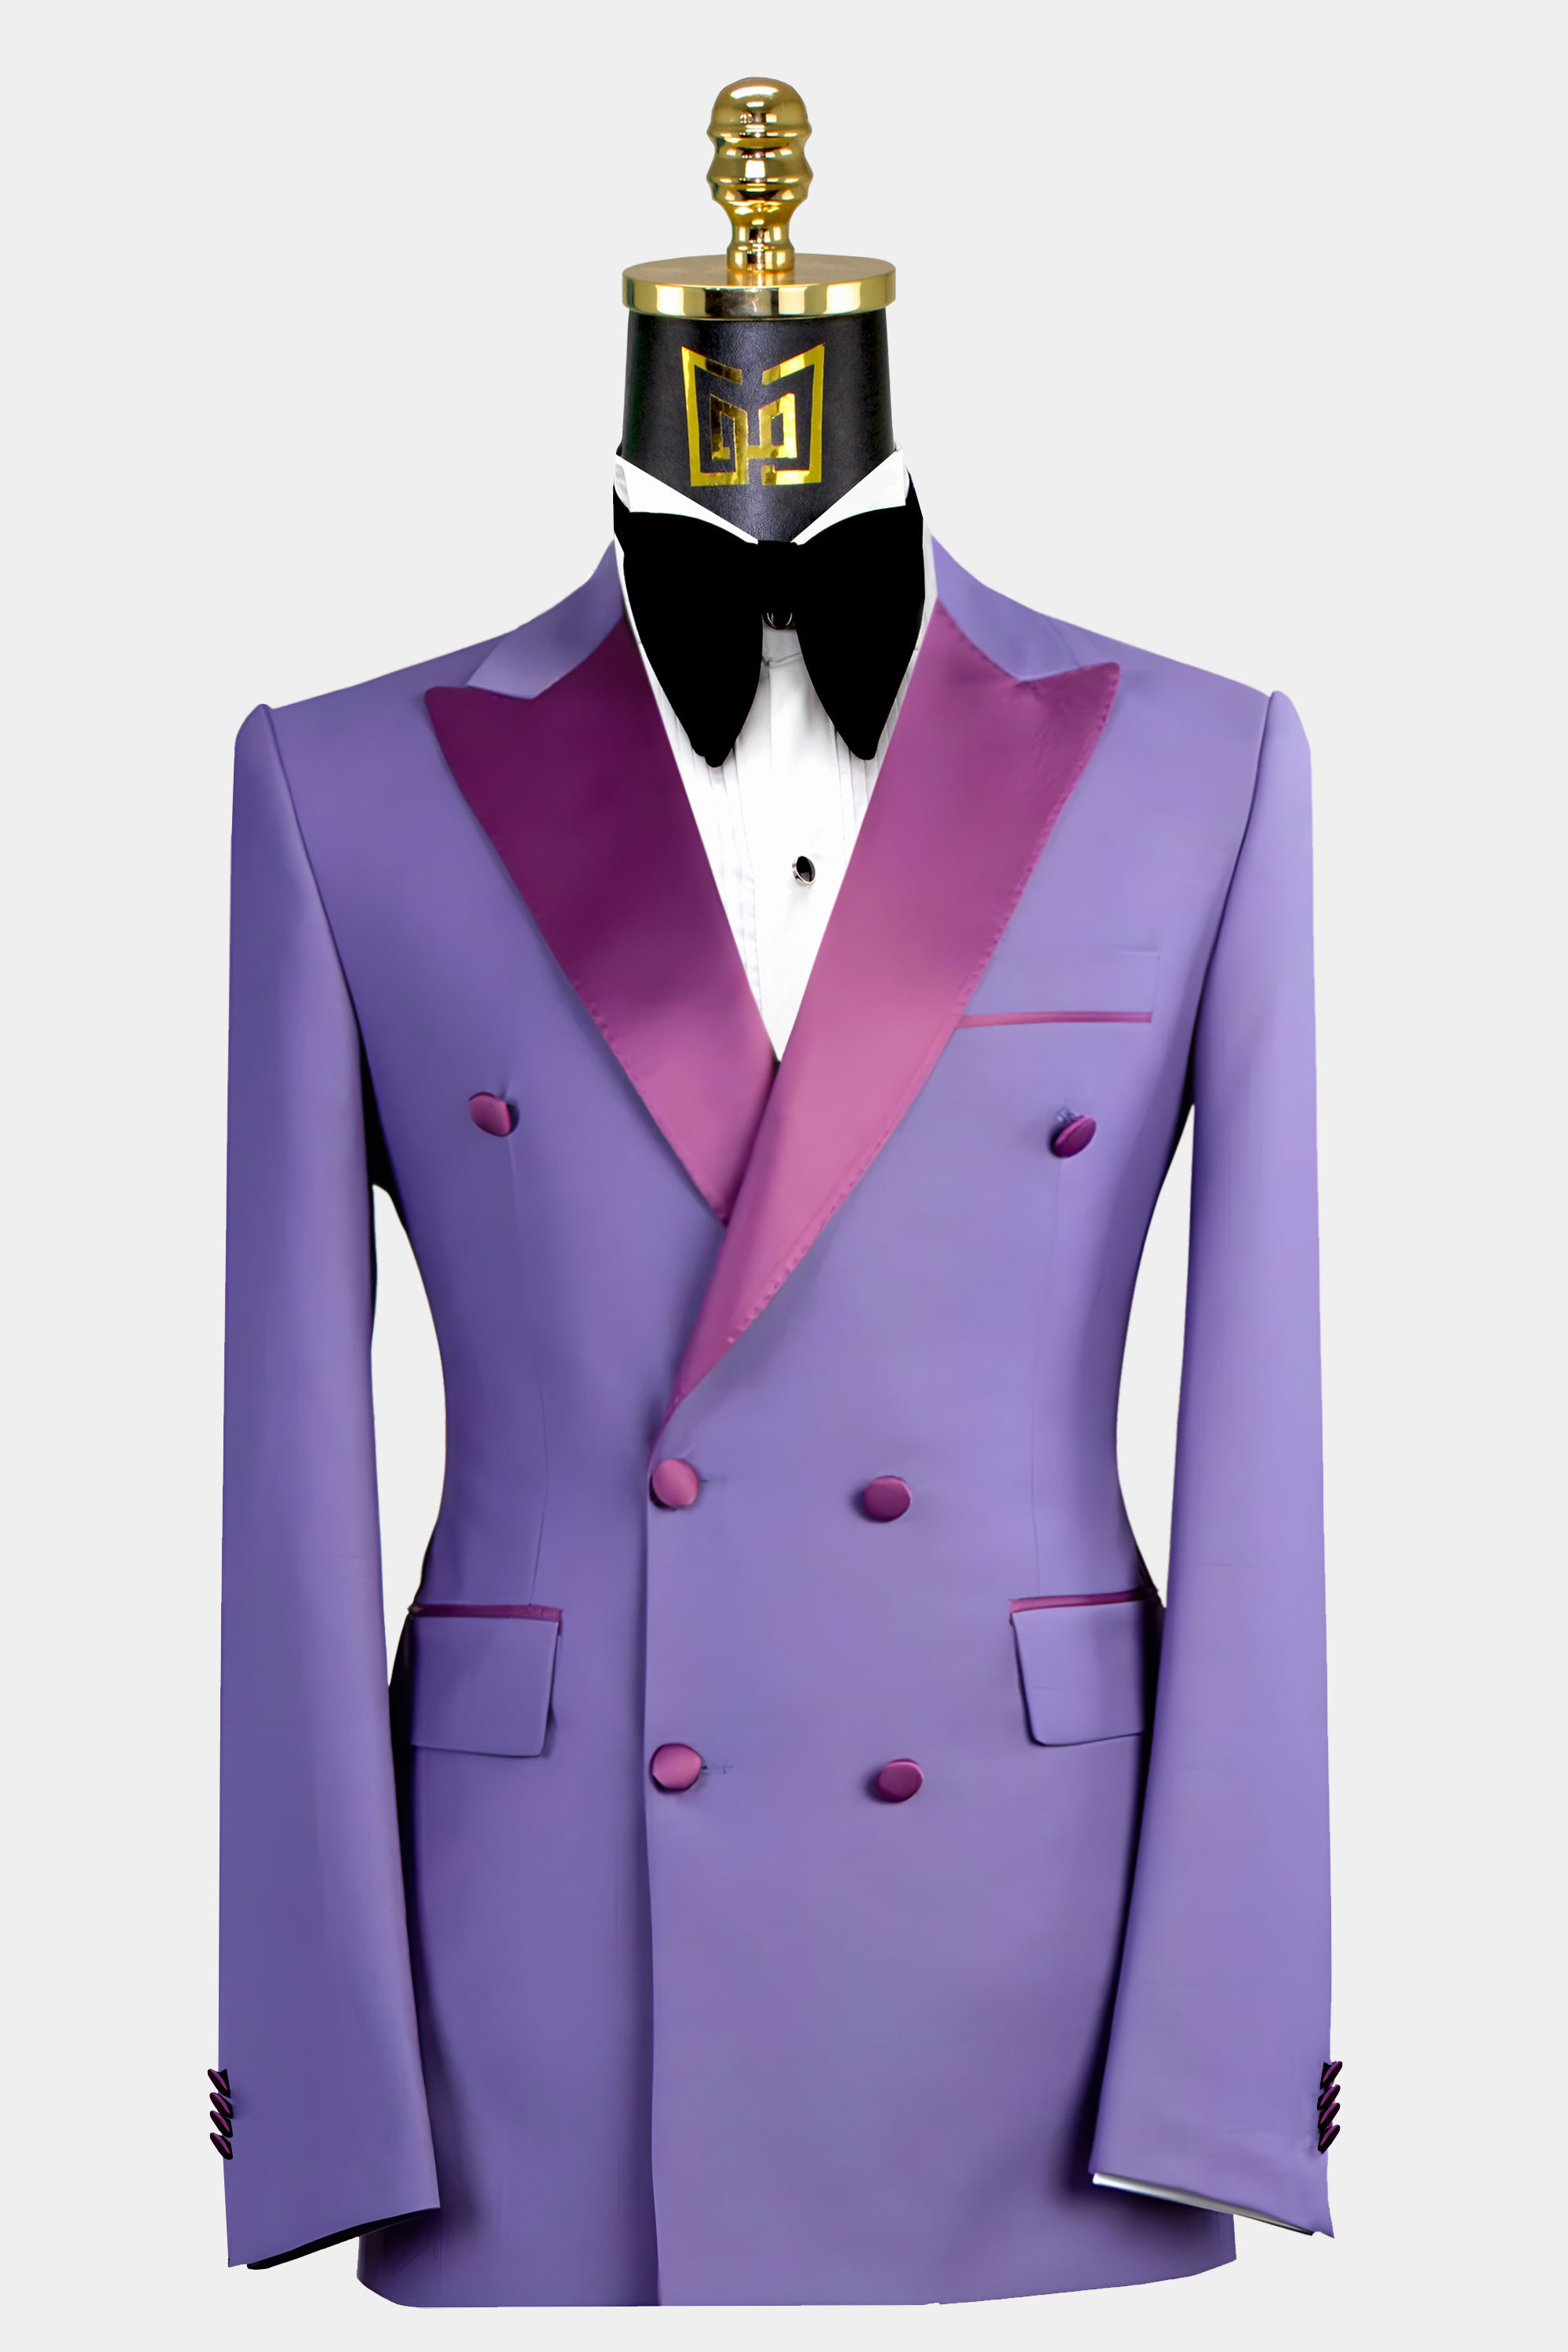 Lavender Tuxedo Suit - 2 Piece | Gentleman's Guru